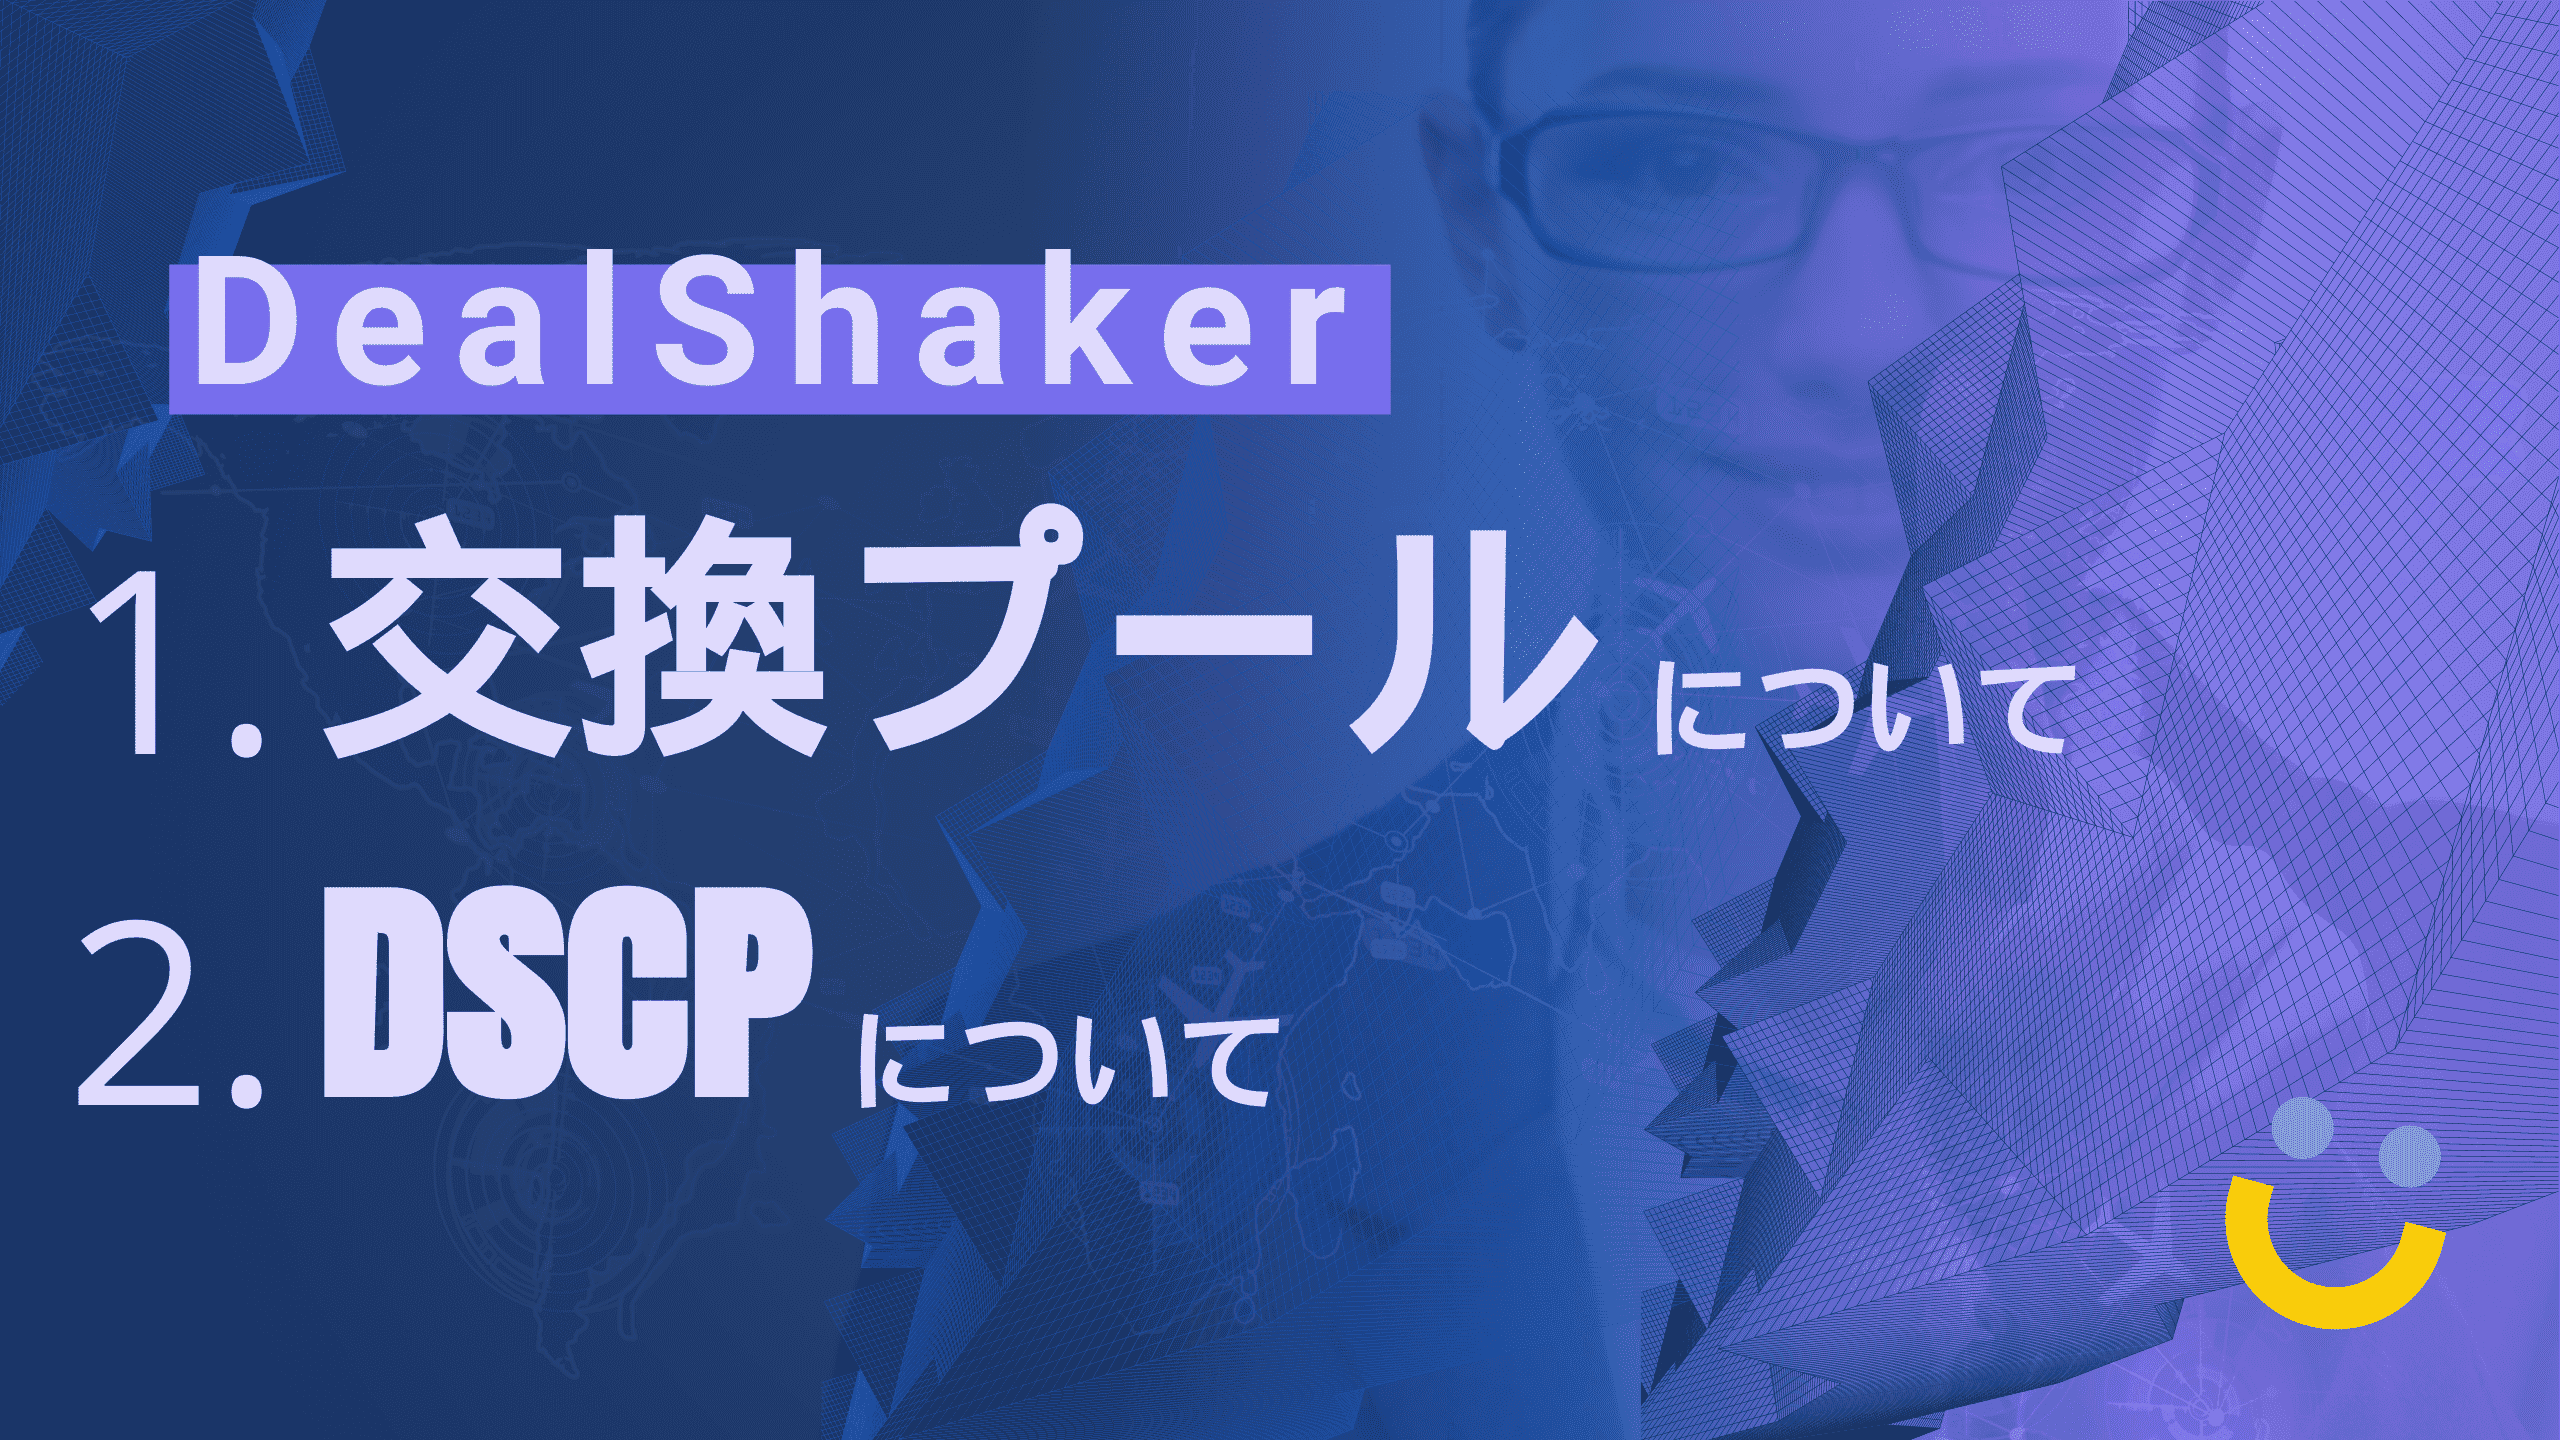 DealShaker 交換プールについて・DSCPについて(ライブ・ウェビナー)